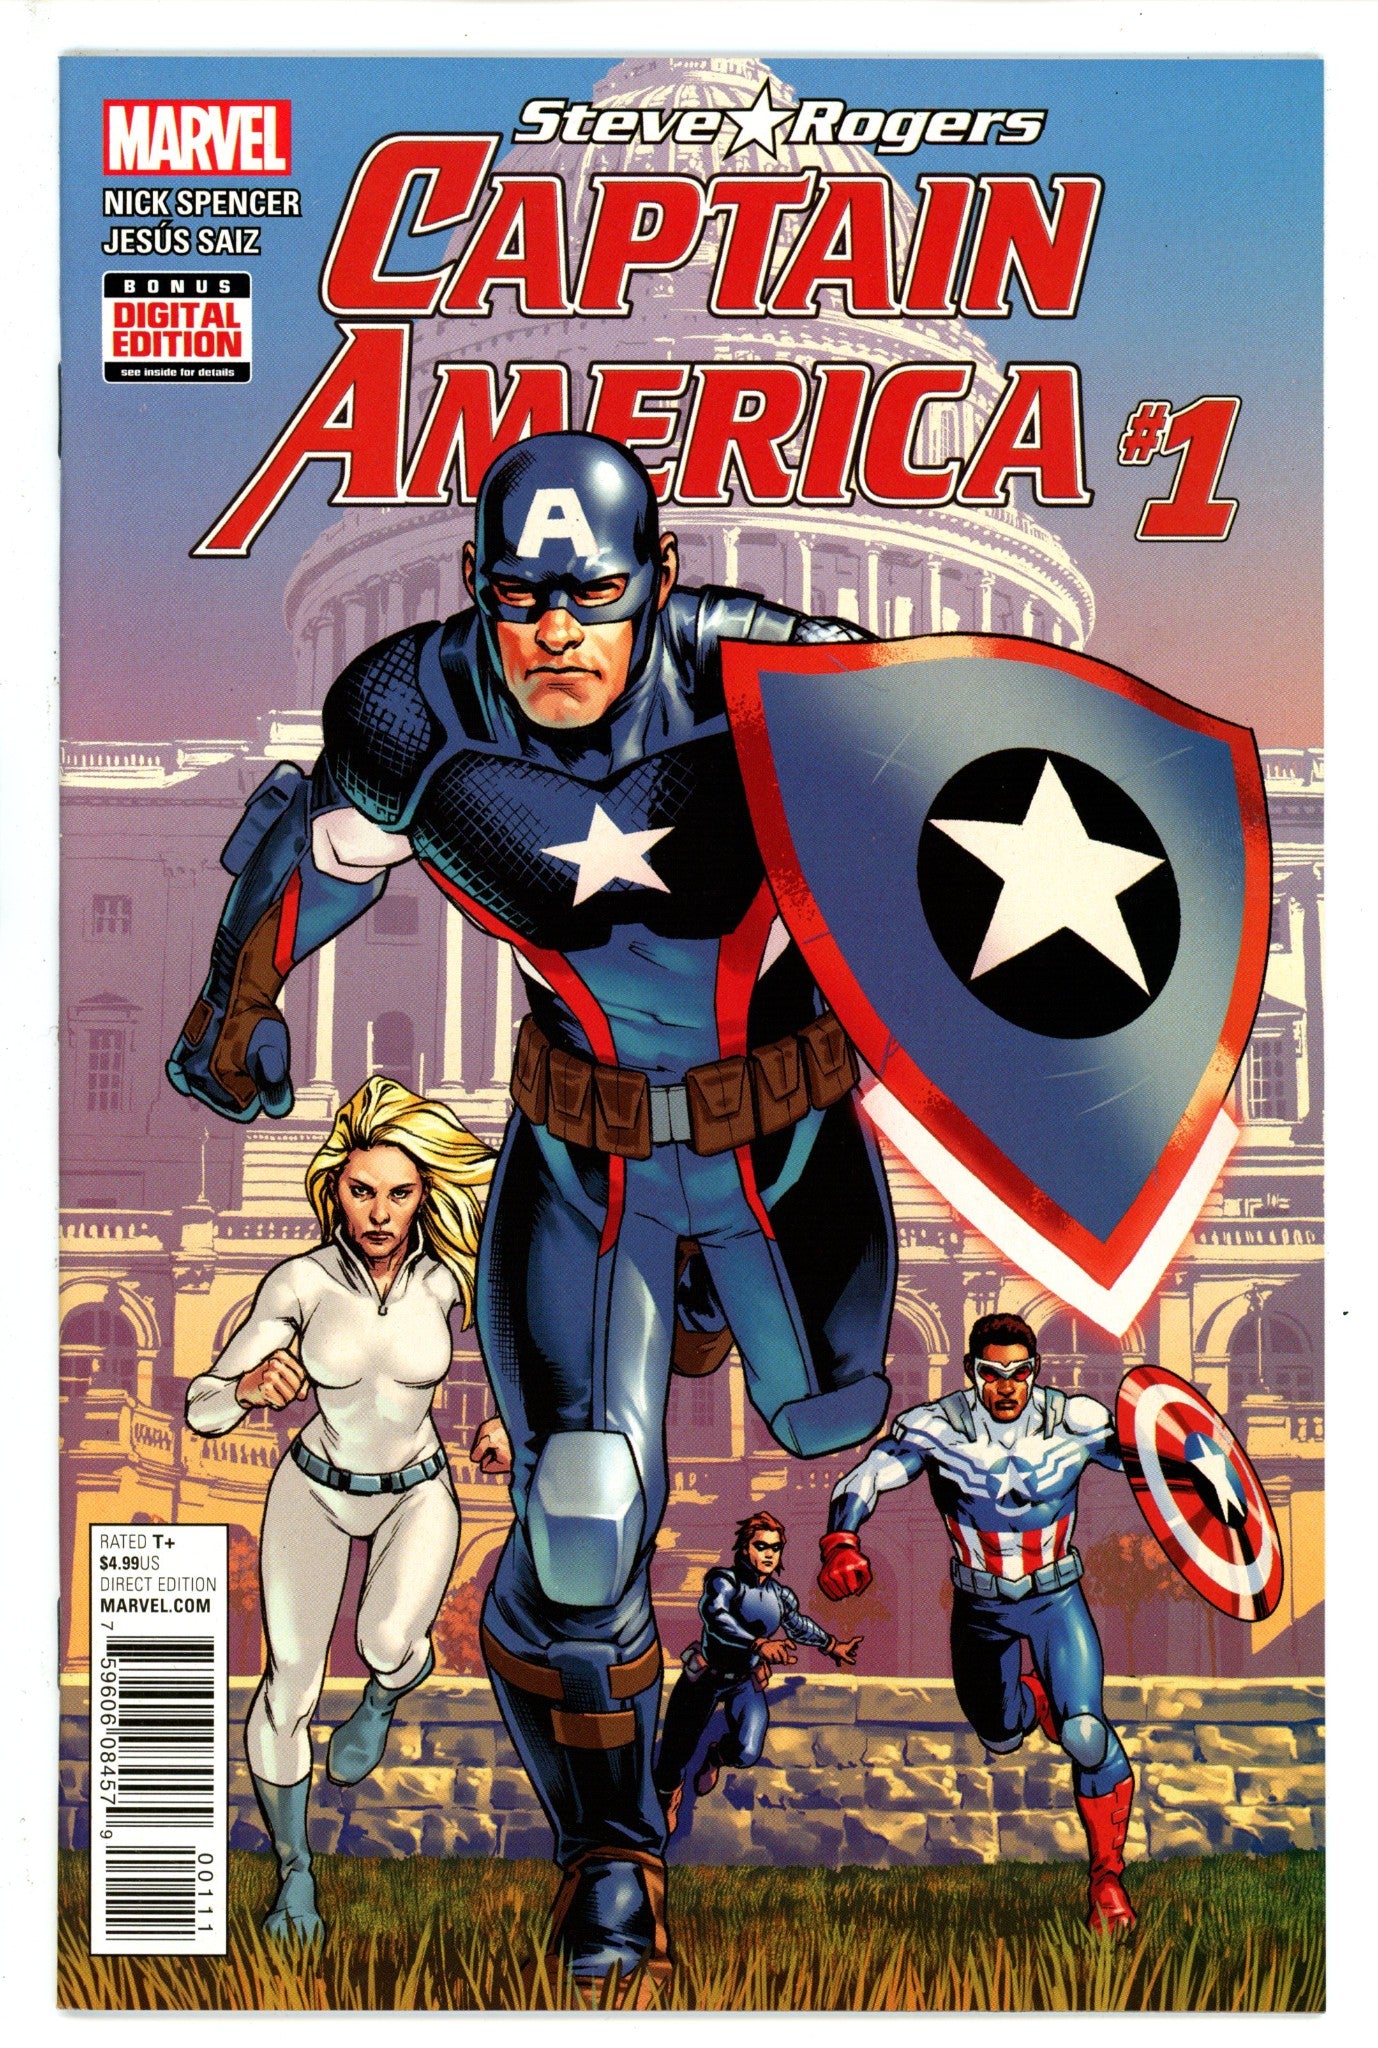 Captain America: Steve Rogers 1